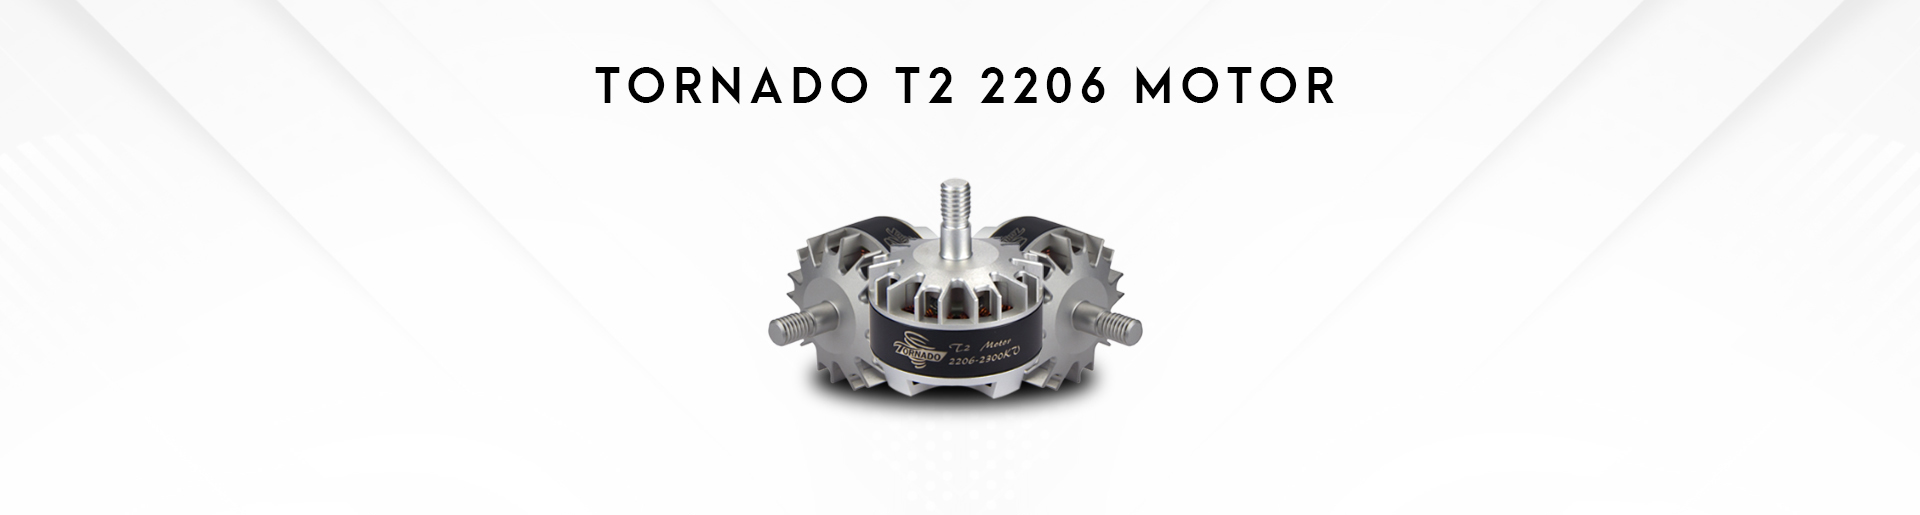 Tornado T2 2206 Motor